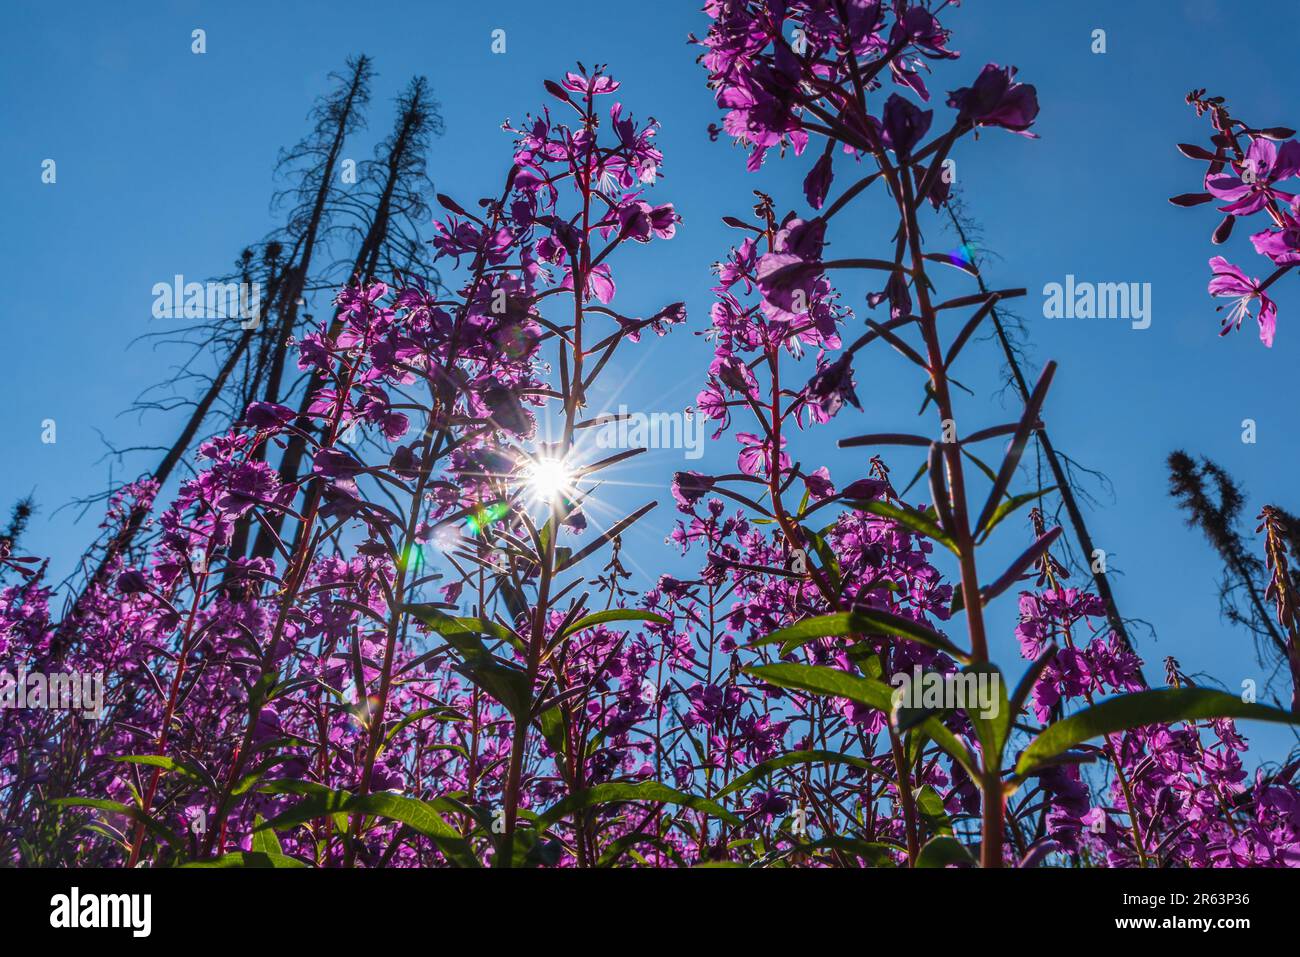 Wunderschöne Feuerweed-Blumen mit Sonne, die durch die Blätter blickt, Stämme der atemberaubenden rosa, violetten Flora. Gesehen im Yukon Territory nahe Alaska, arktisch Stockfoto